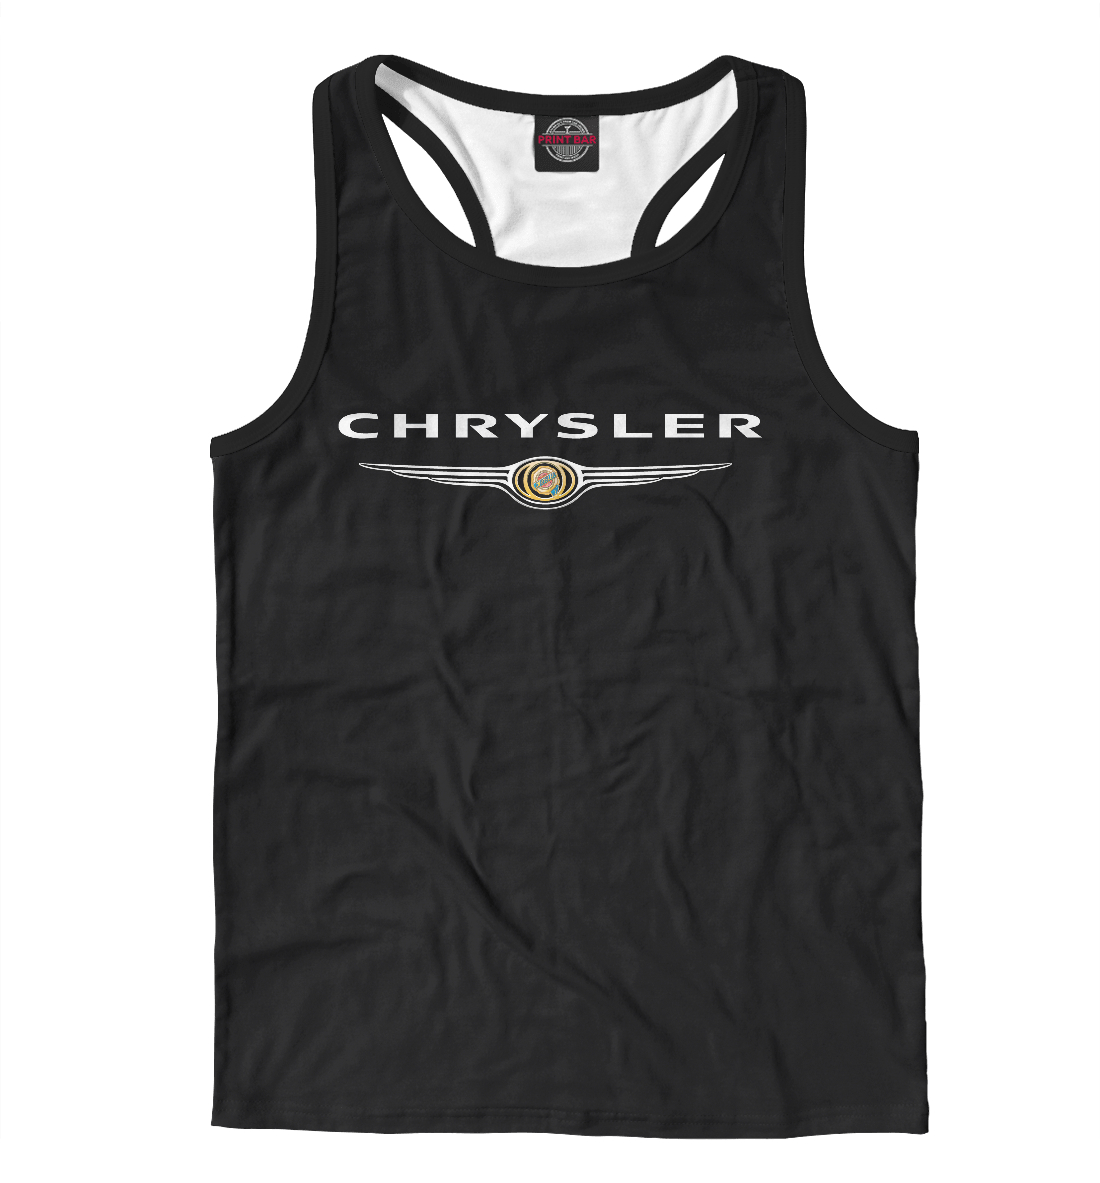 

Chrysler